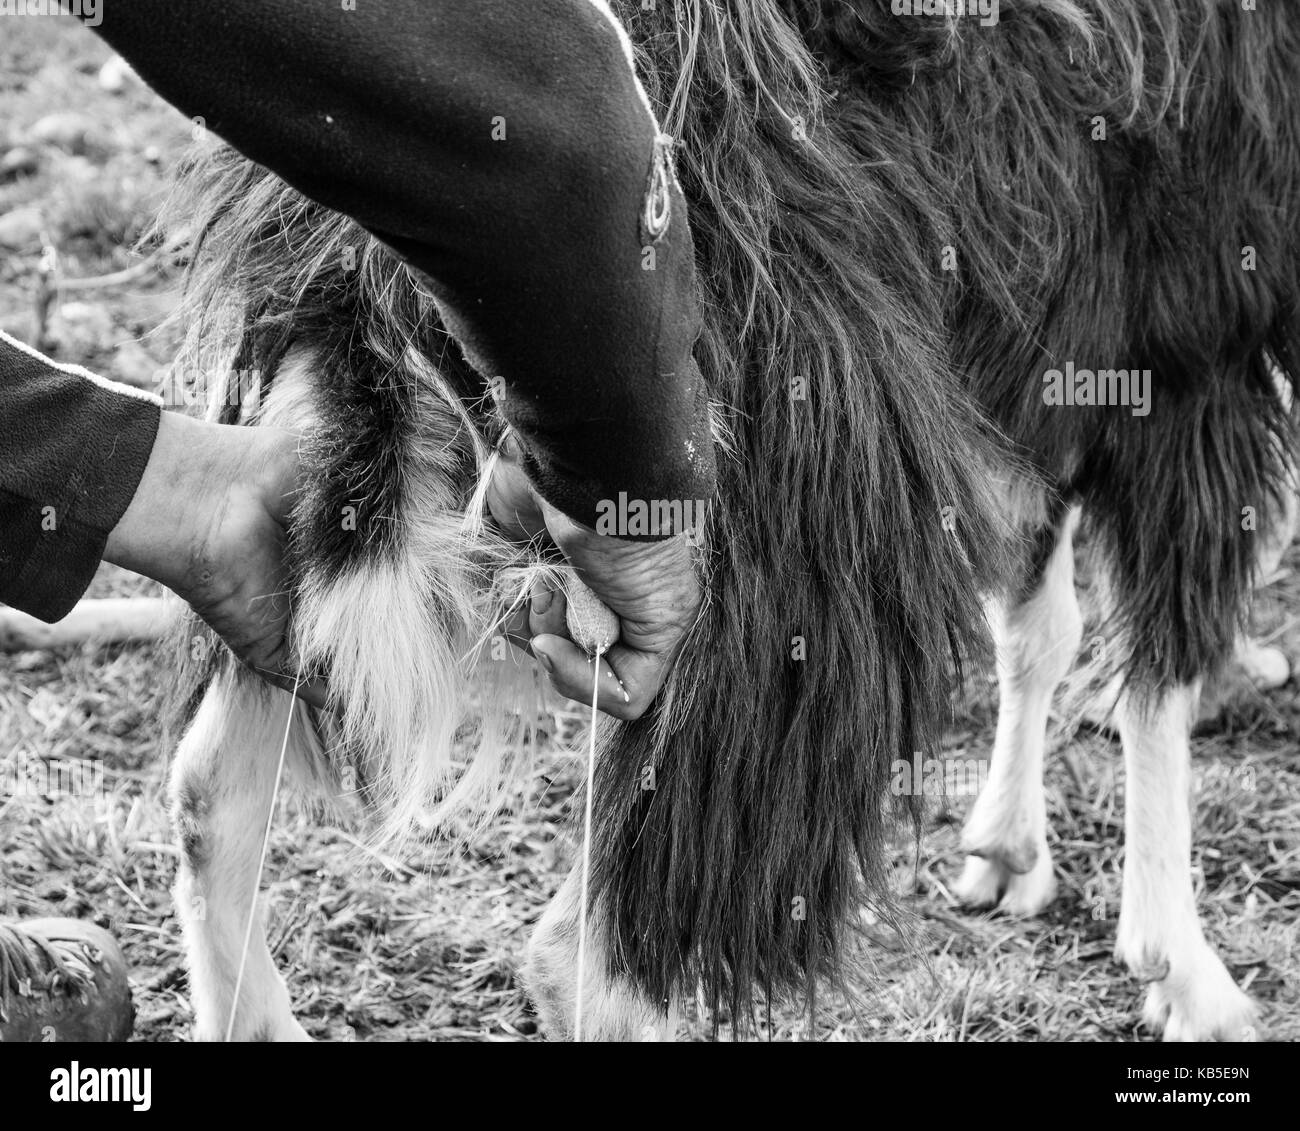 Close-up di mungitura di capra in fattoria. mungitura tradizionale. Immagine in bianco e nero Foto Stock